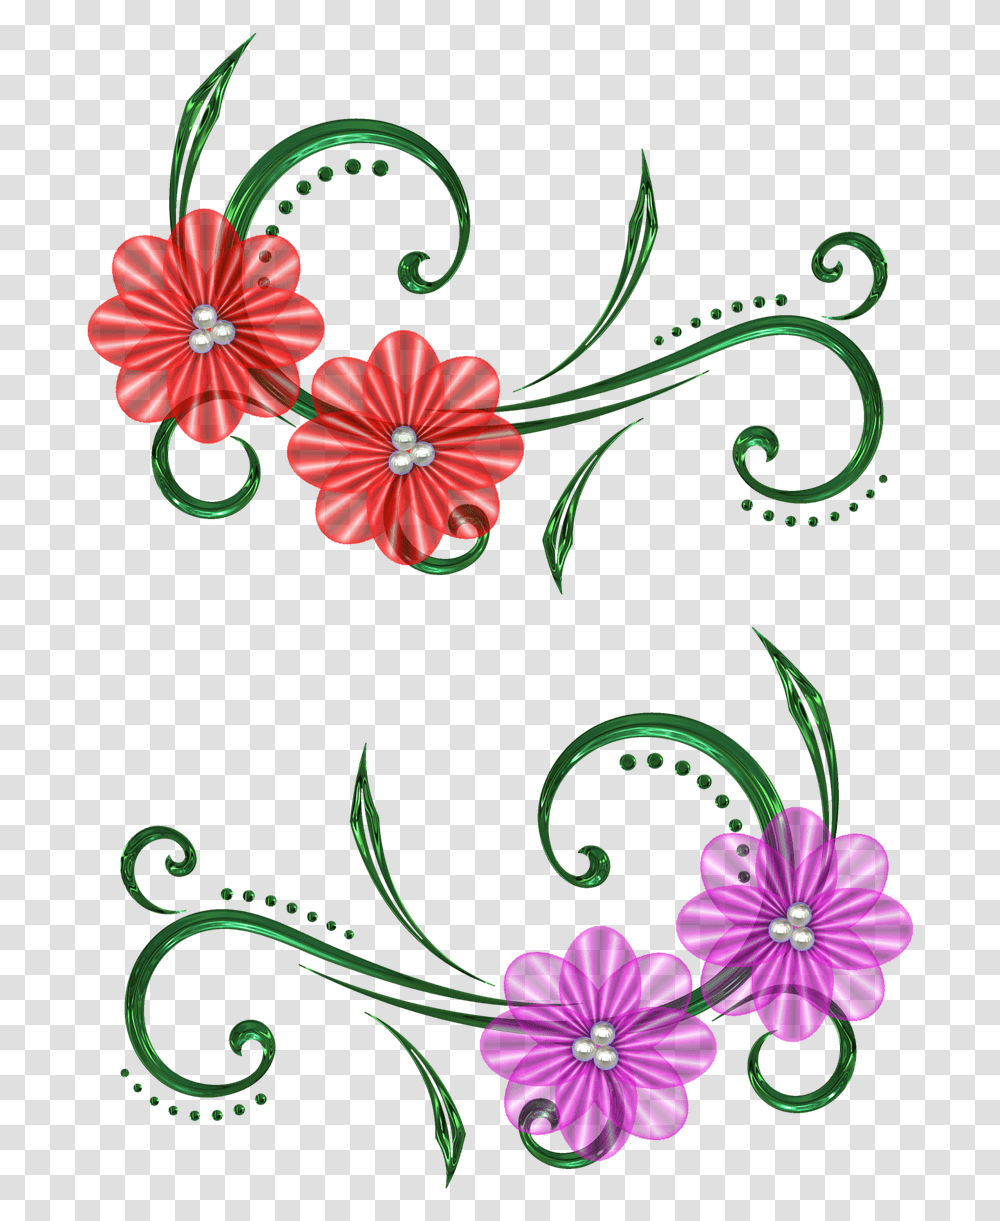 Flower Pearls Design Flower Design For Scrapbook, Graphics, Art, Floral Design, Pattern Transparent Png